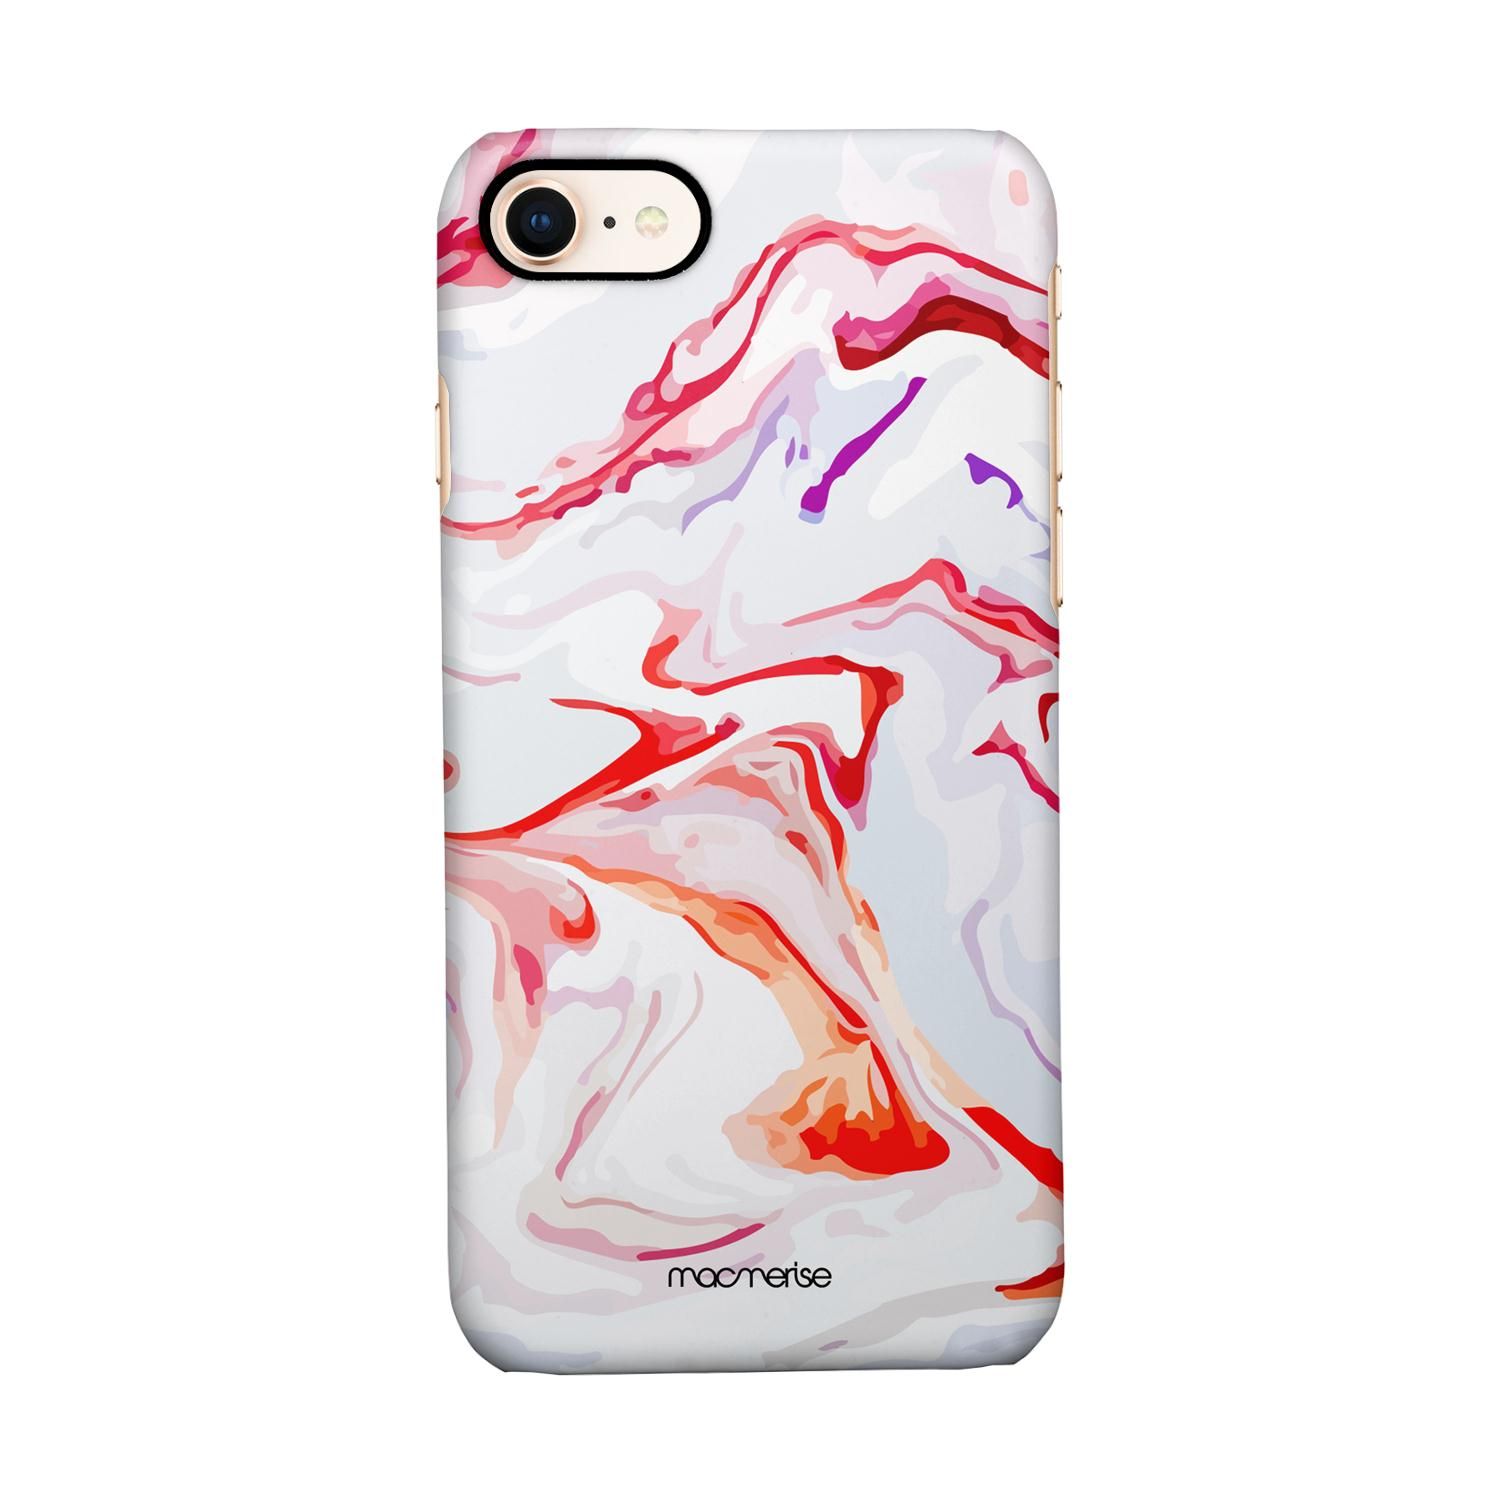 Buy Liquid Funk Marble - Sleek Phone Case for iPhone 7 Online